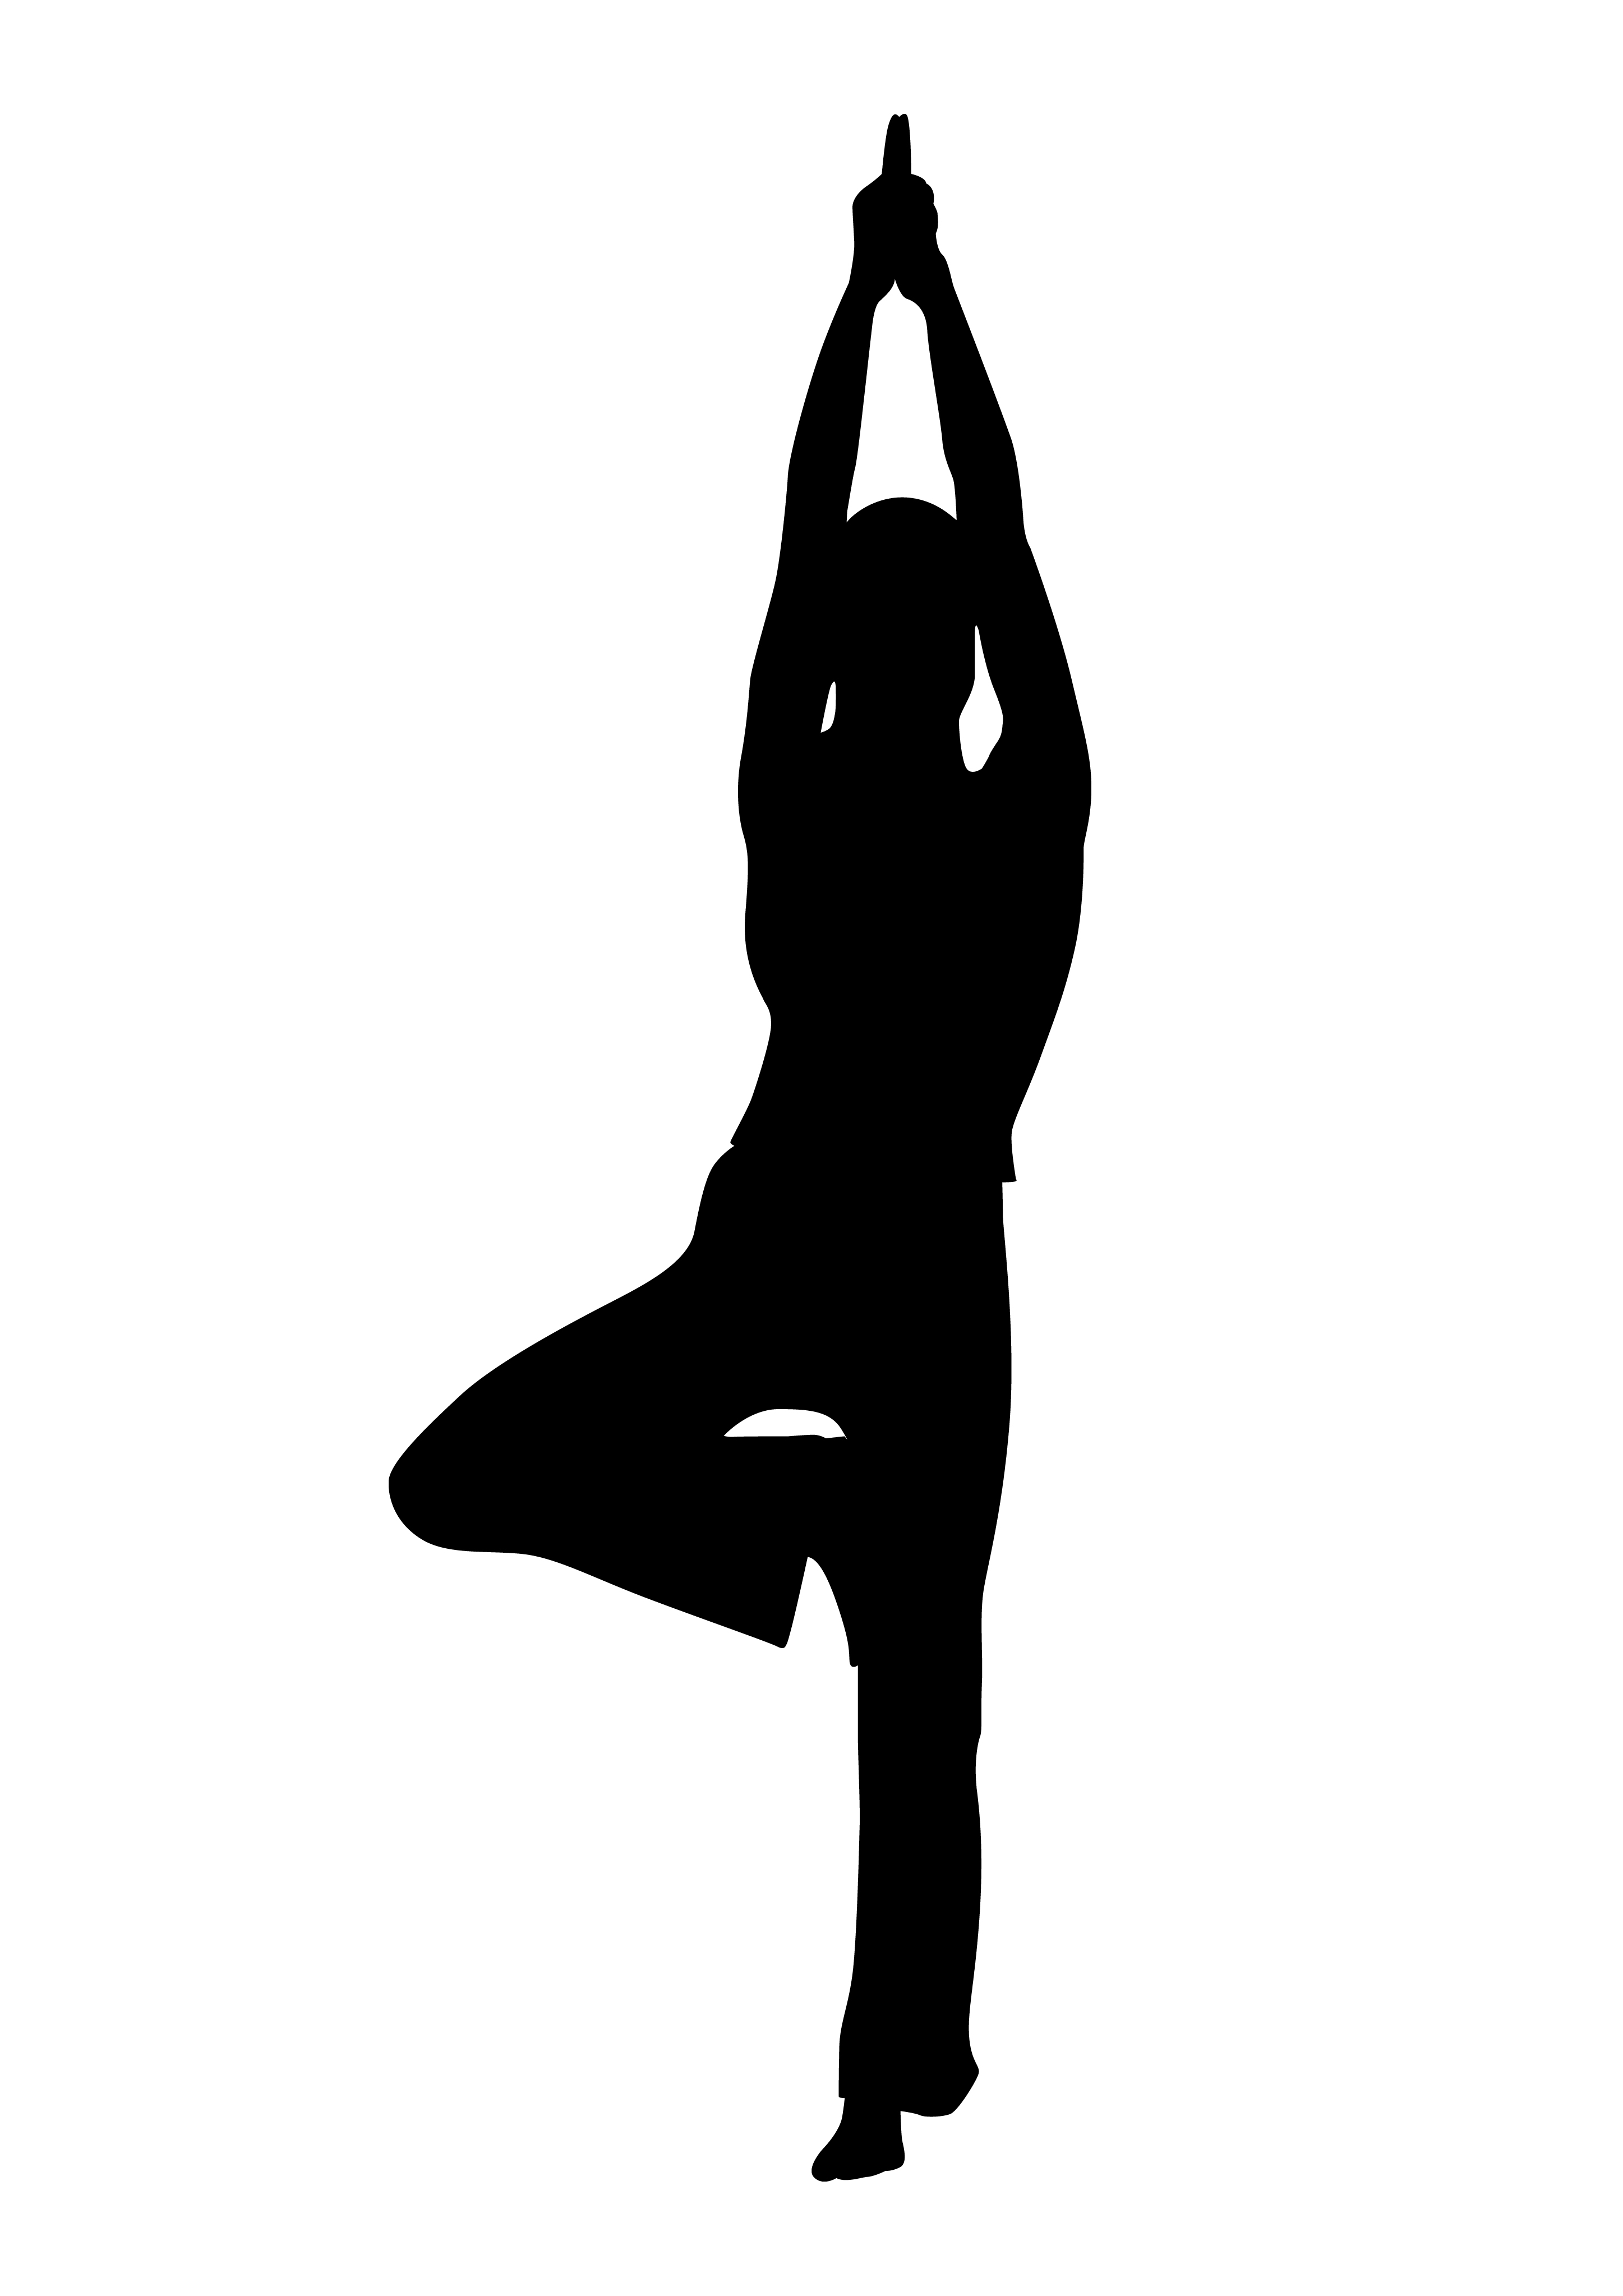 Yoga Poses Drawing - Drawing Skill